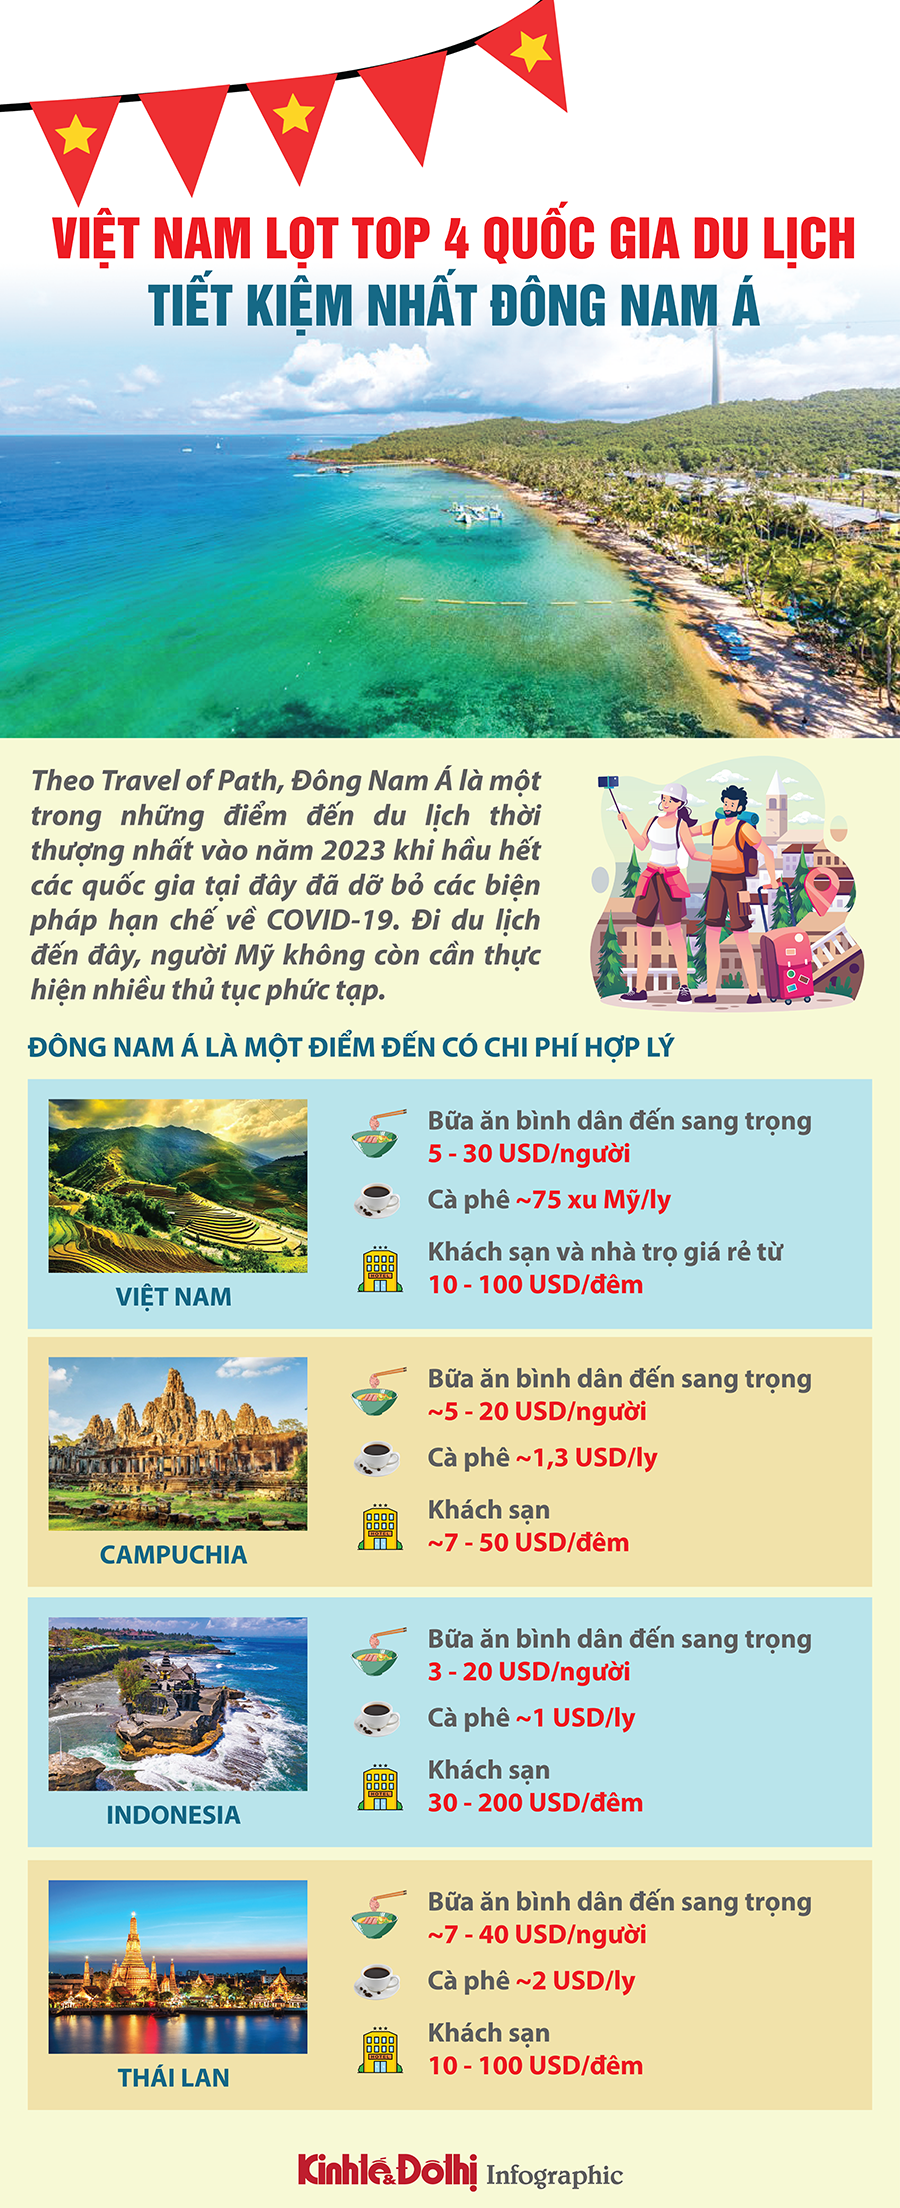 Việt Nam lọt top quốc gia du lịch tiết kiệm nhất Đông Nam Á - Ảnh 1